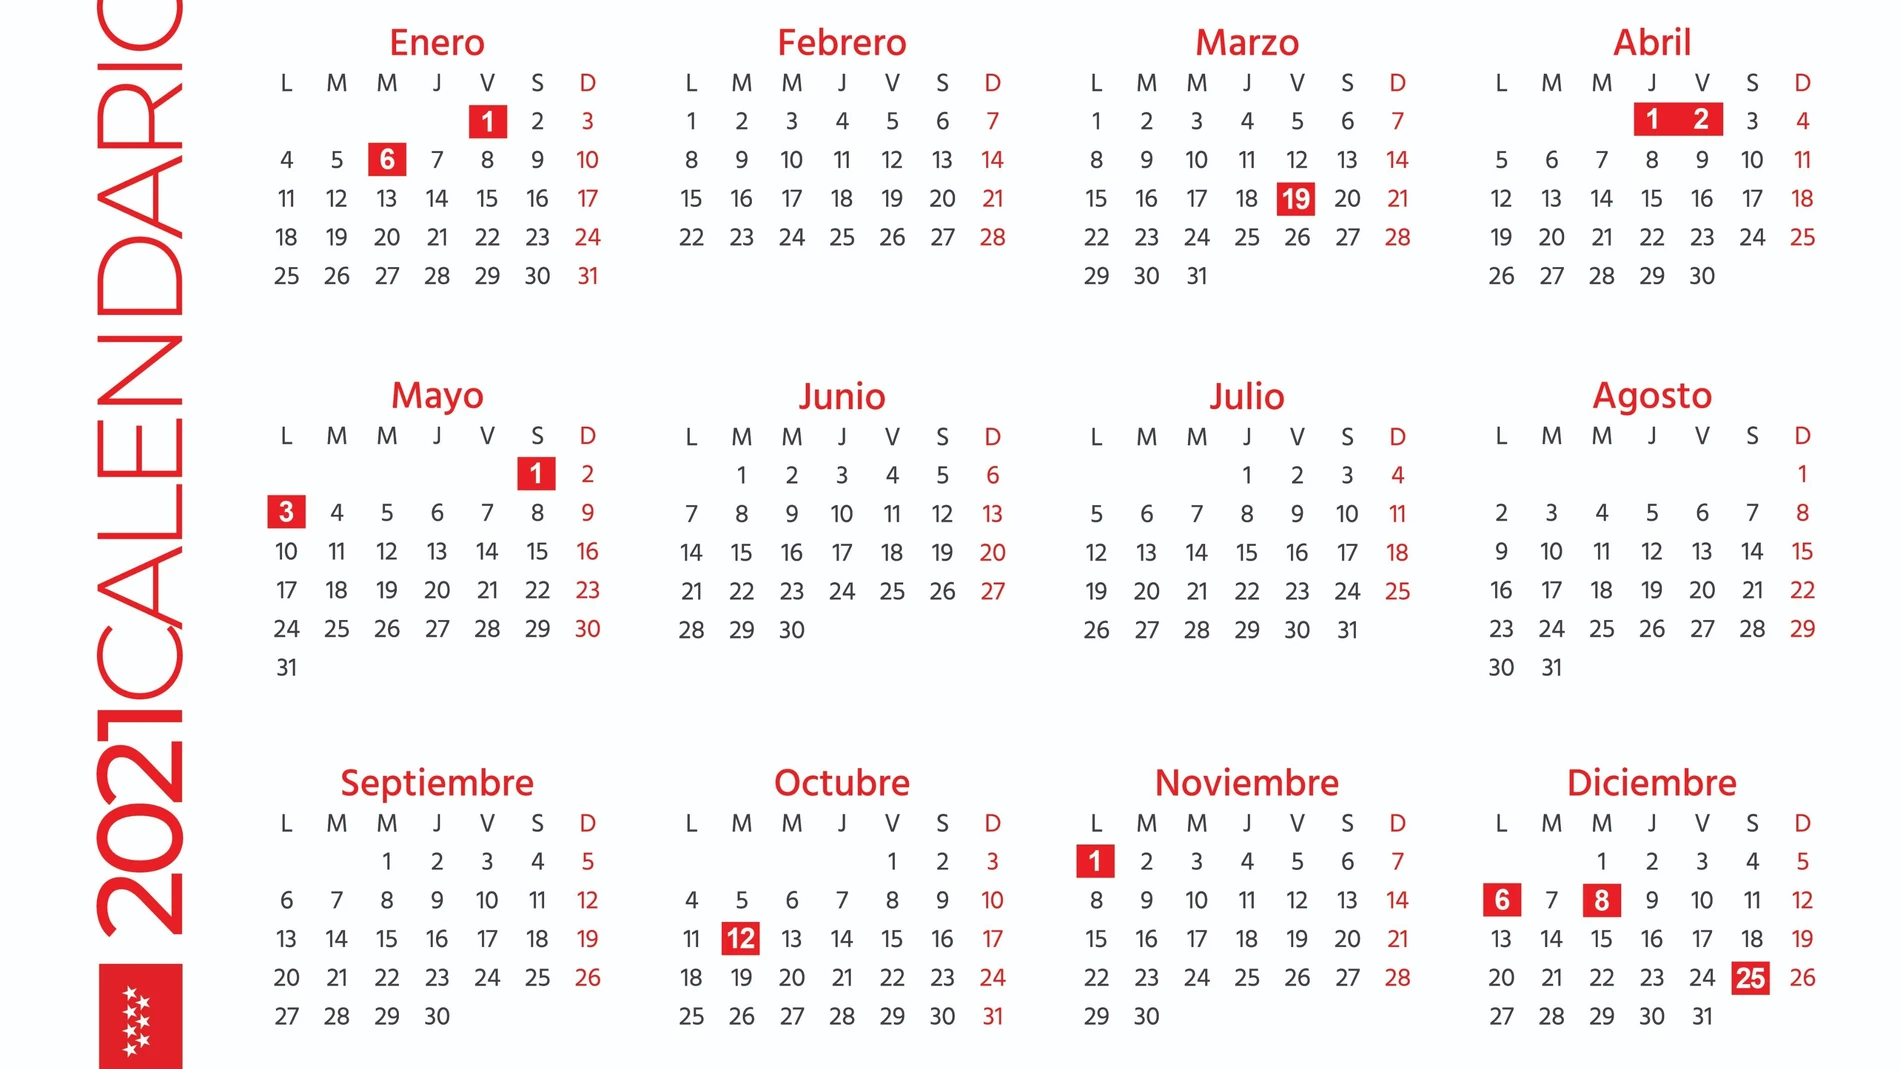 Madrid estrena calendario laboral: el 19 de marzo, Día del Padre, será festivo